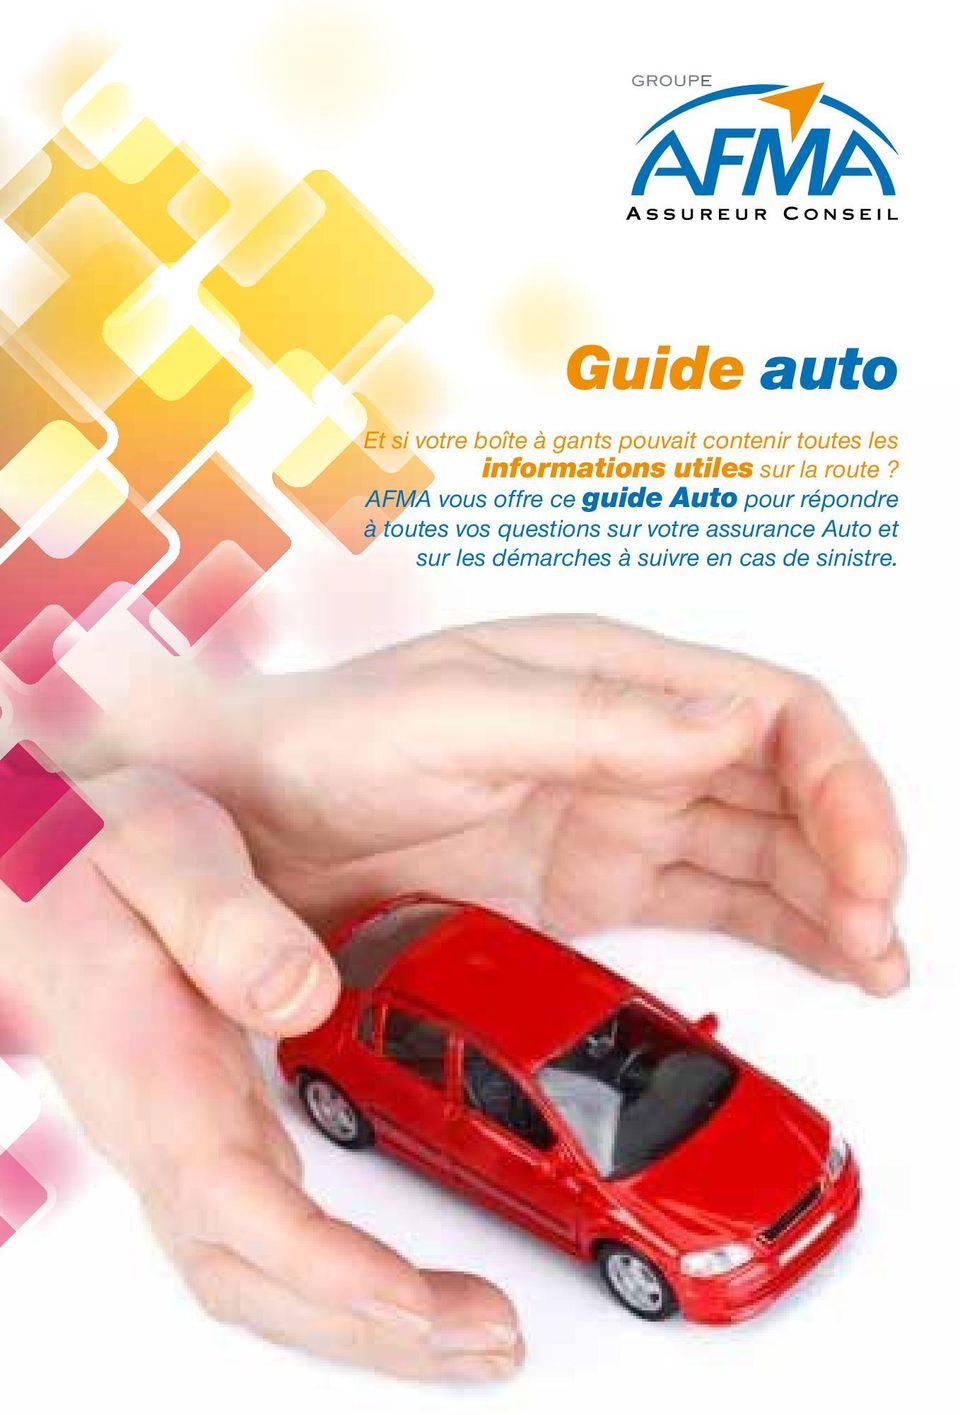 AFMA vous offre ce guide Auto pour répondre à toutes vos